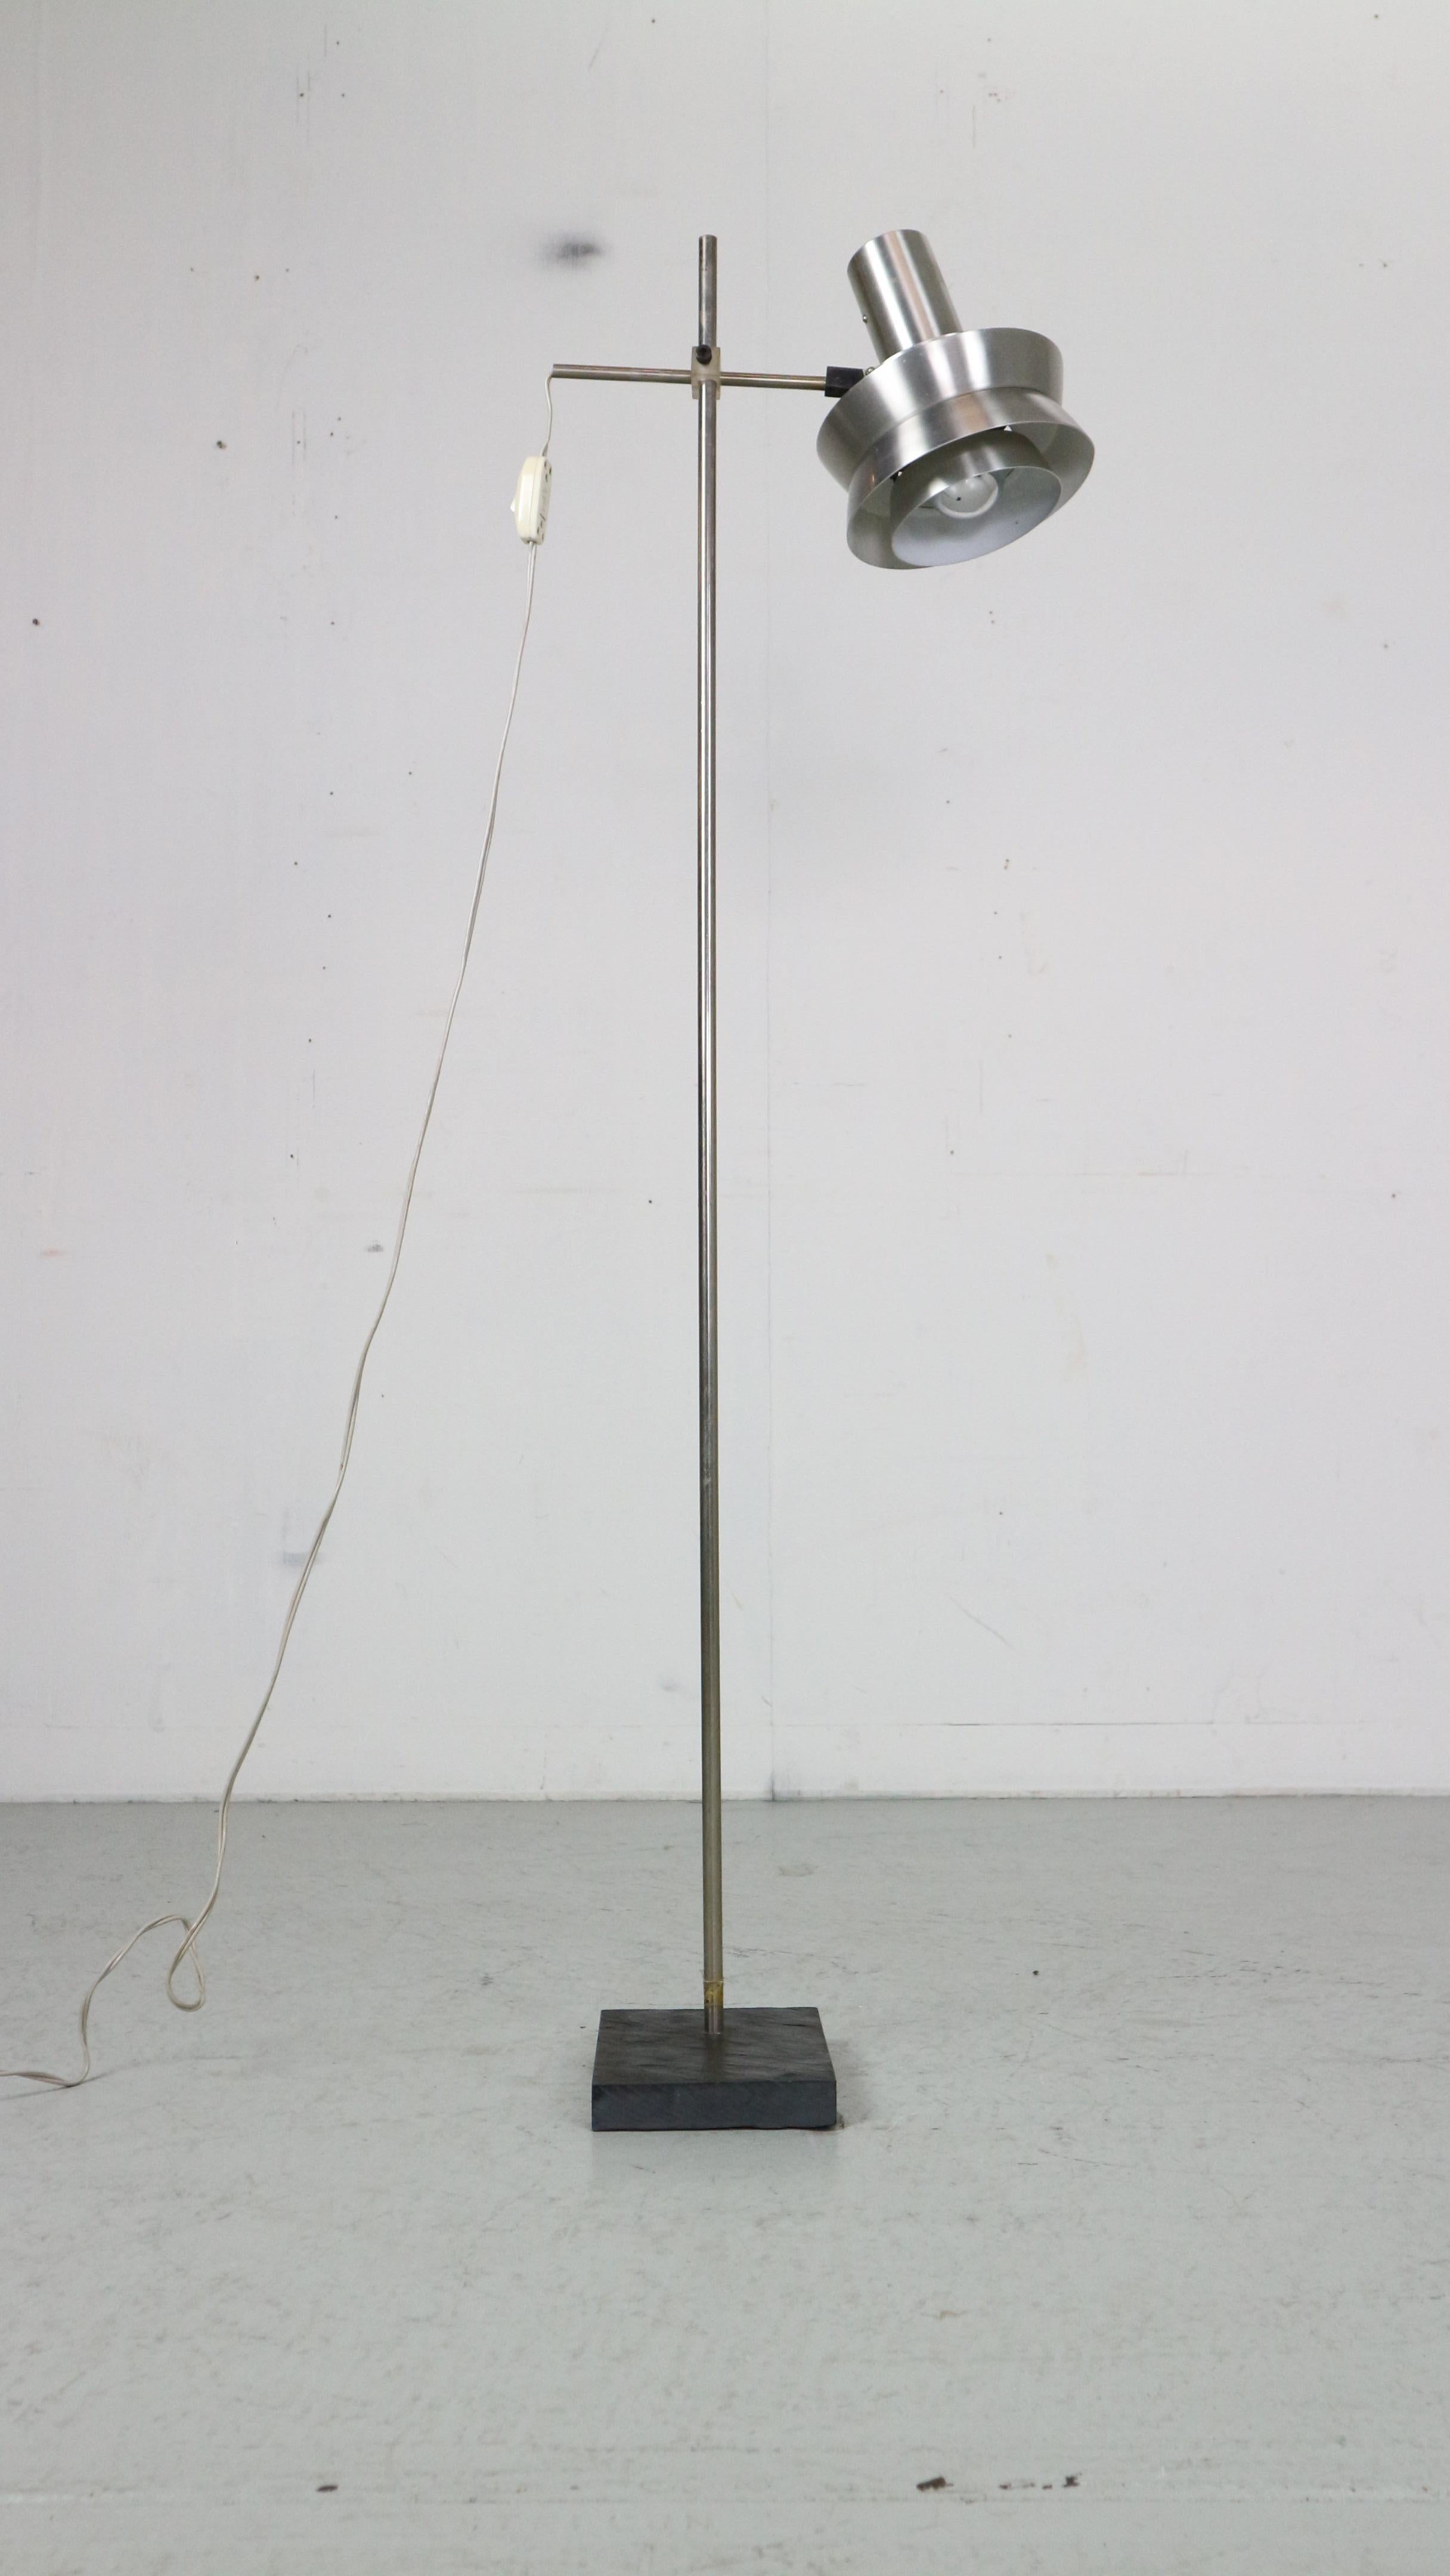 Lampadaire d'époque The Modern Scandinavian Modern/One conçu dans les années 1970, Danemark.

L'abat-jour en métal chromé est disponible en deux couleurs - argent et rouge - et dispose d'un bouton marche/arrêt.
Vous pouvez régler la hauteur et la